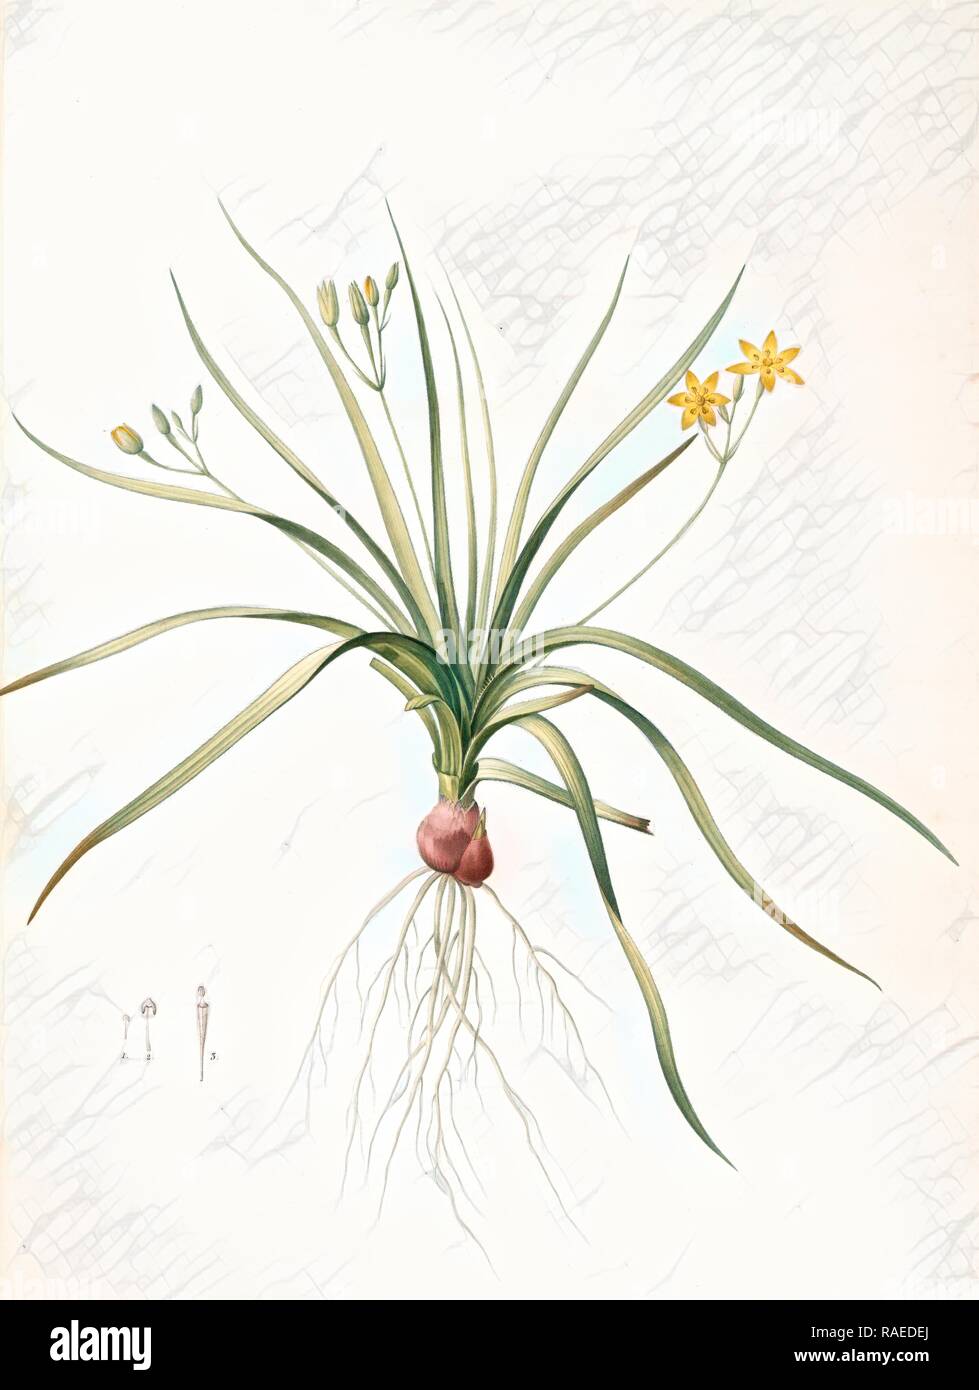 Hypoxia erecta, Hypoxis hirsuta, Hypoxis droite, Common Gold star, Redouté, Pierre Joseph, 1759-1840, les liliacees reimagined Stock Photo